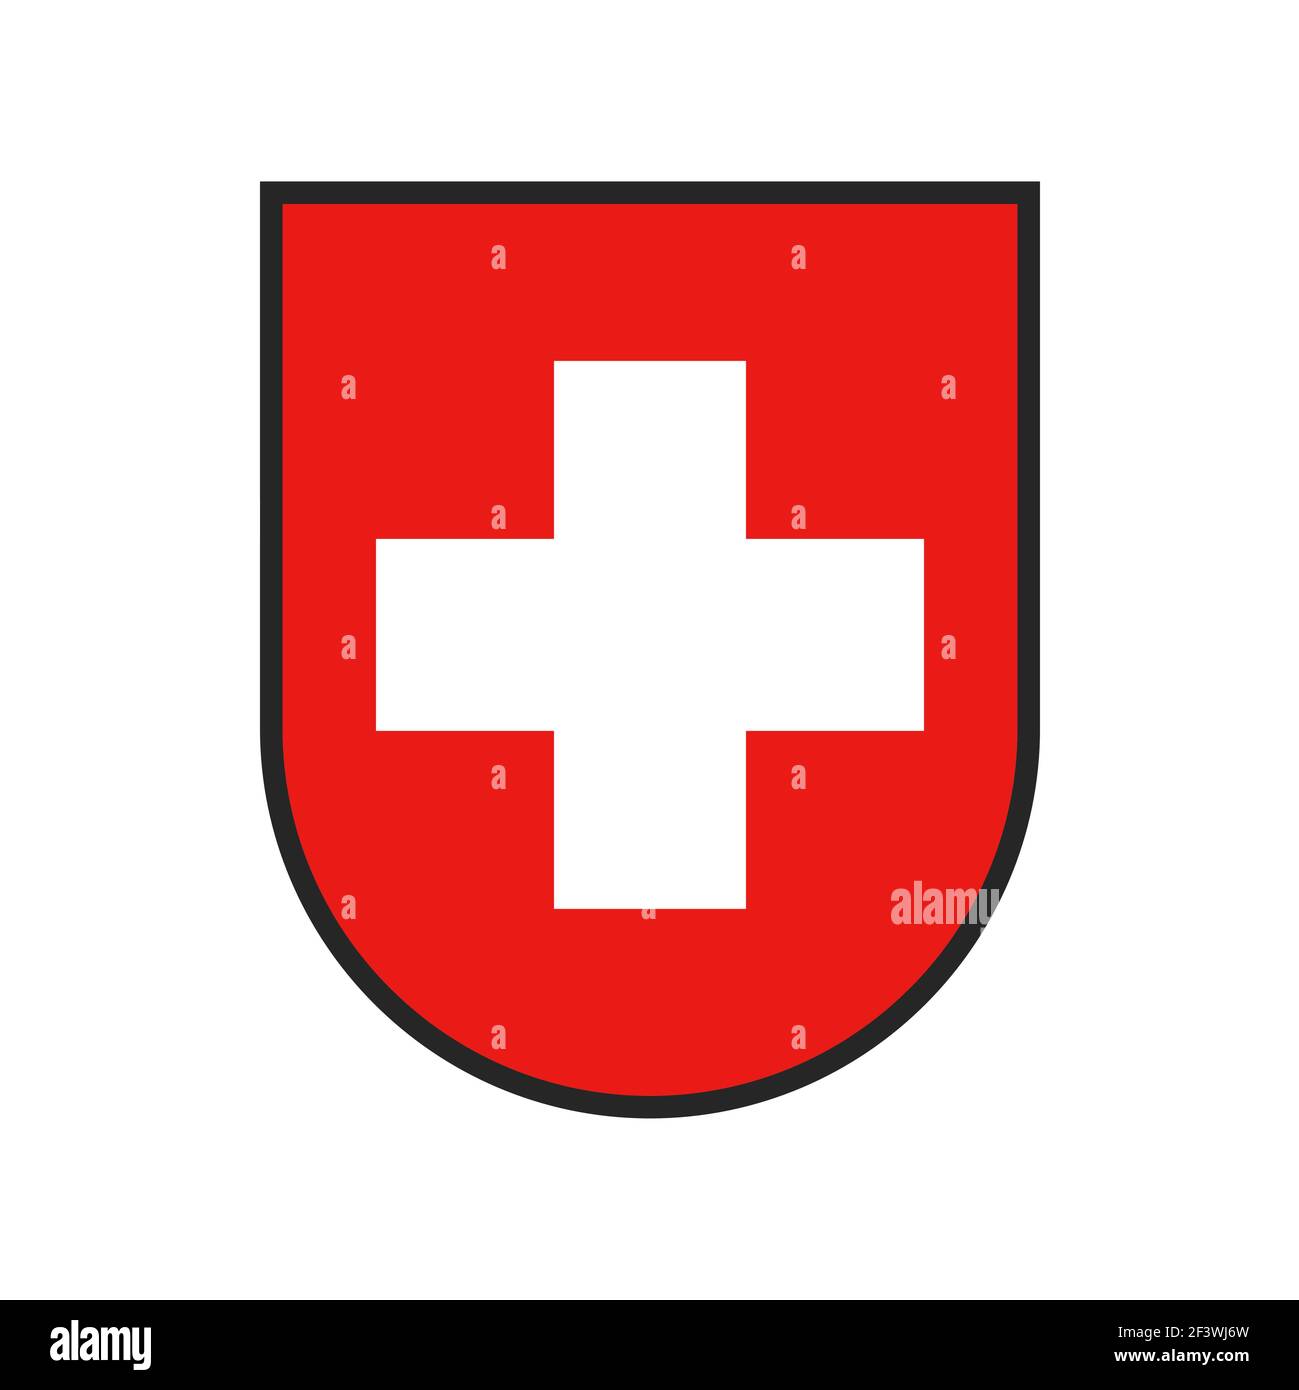 Schweiz Wappen, Schweizer Konföderation Flaggenemblem, Vektor Heraldik Schild. Schweiz nationales Symbol der Schweiz Europäische republik, heraldic Co Stock Vektor